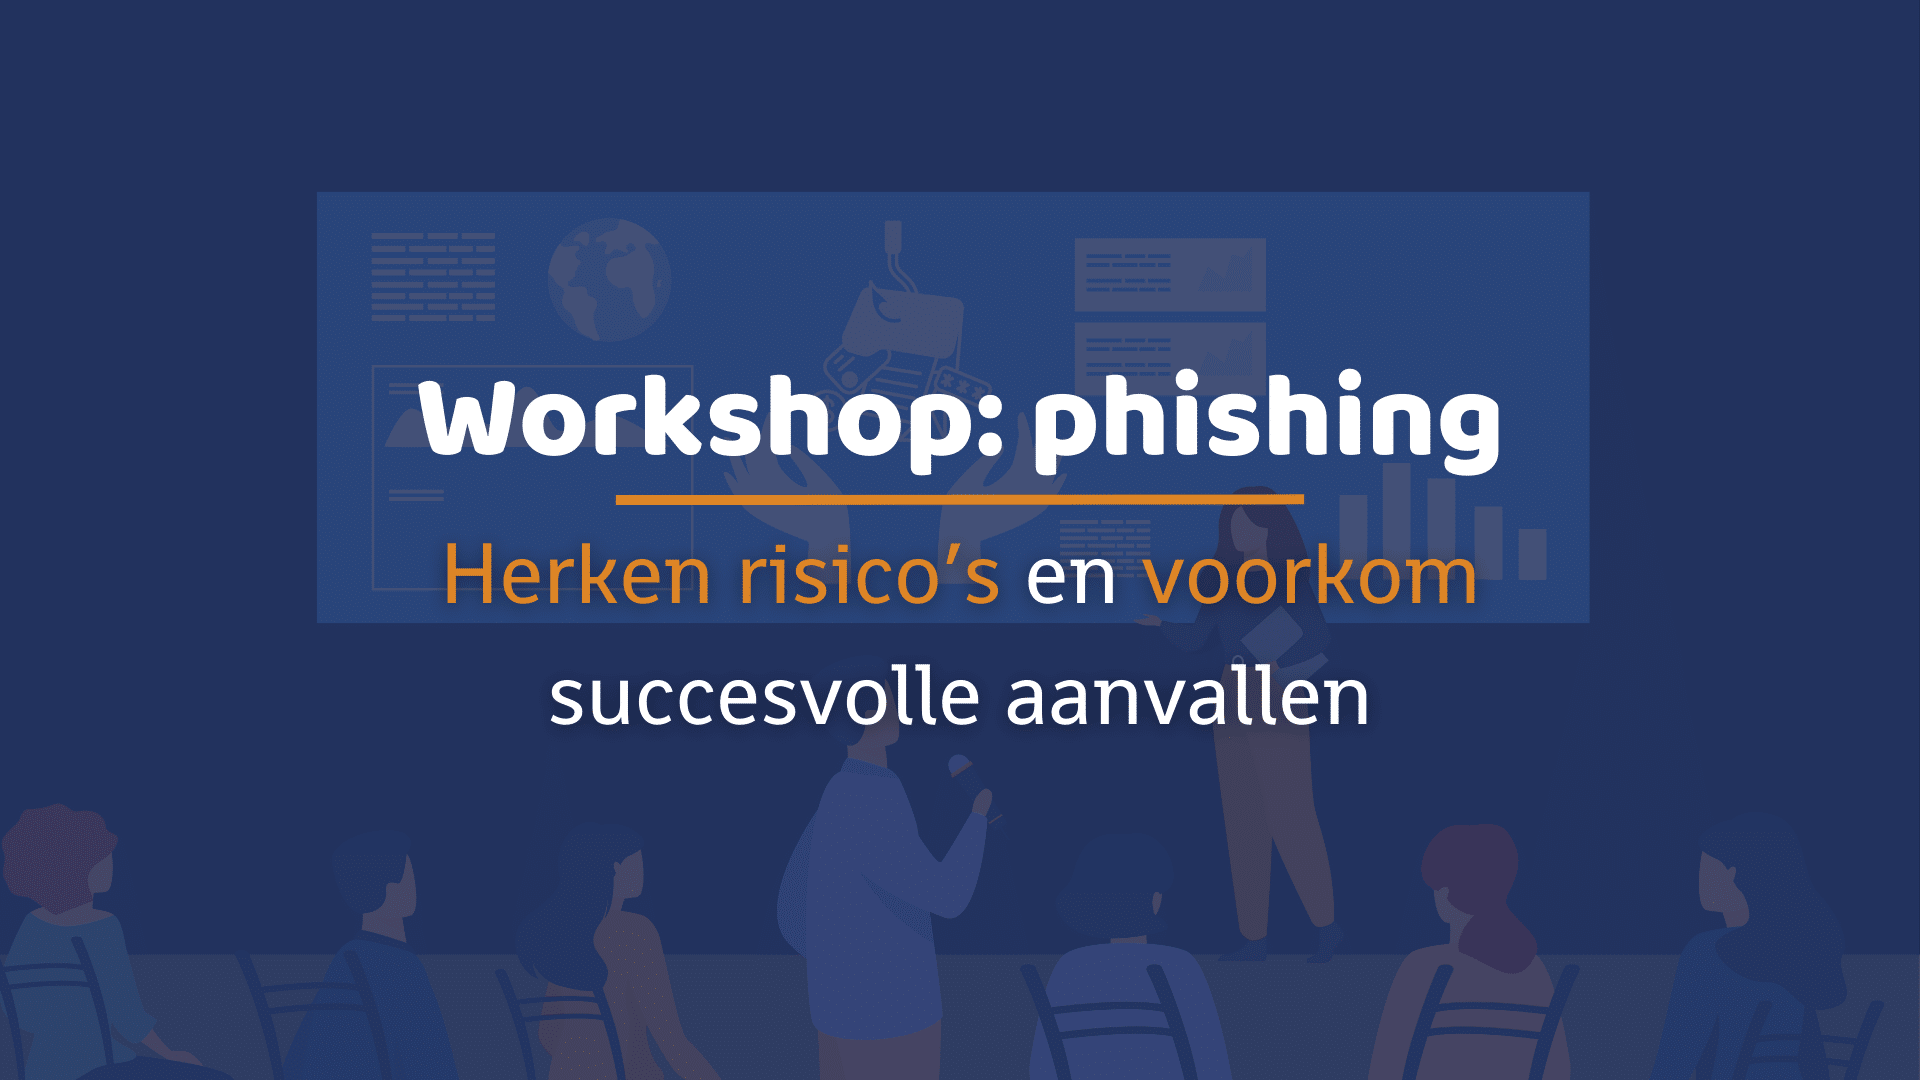 Workshop: phishing. Herken risico's en voorkom succesvolle aanvallen.